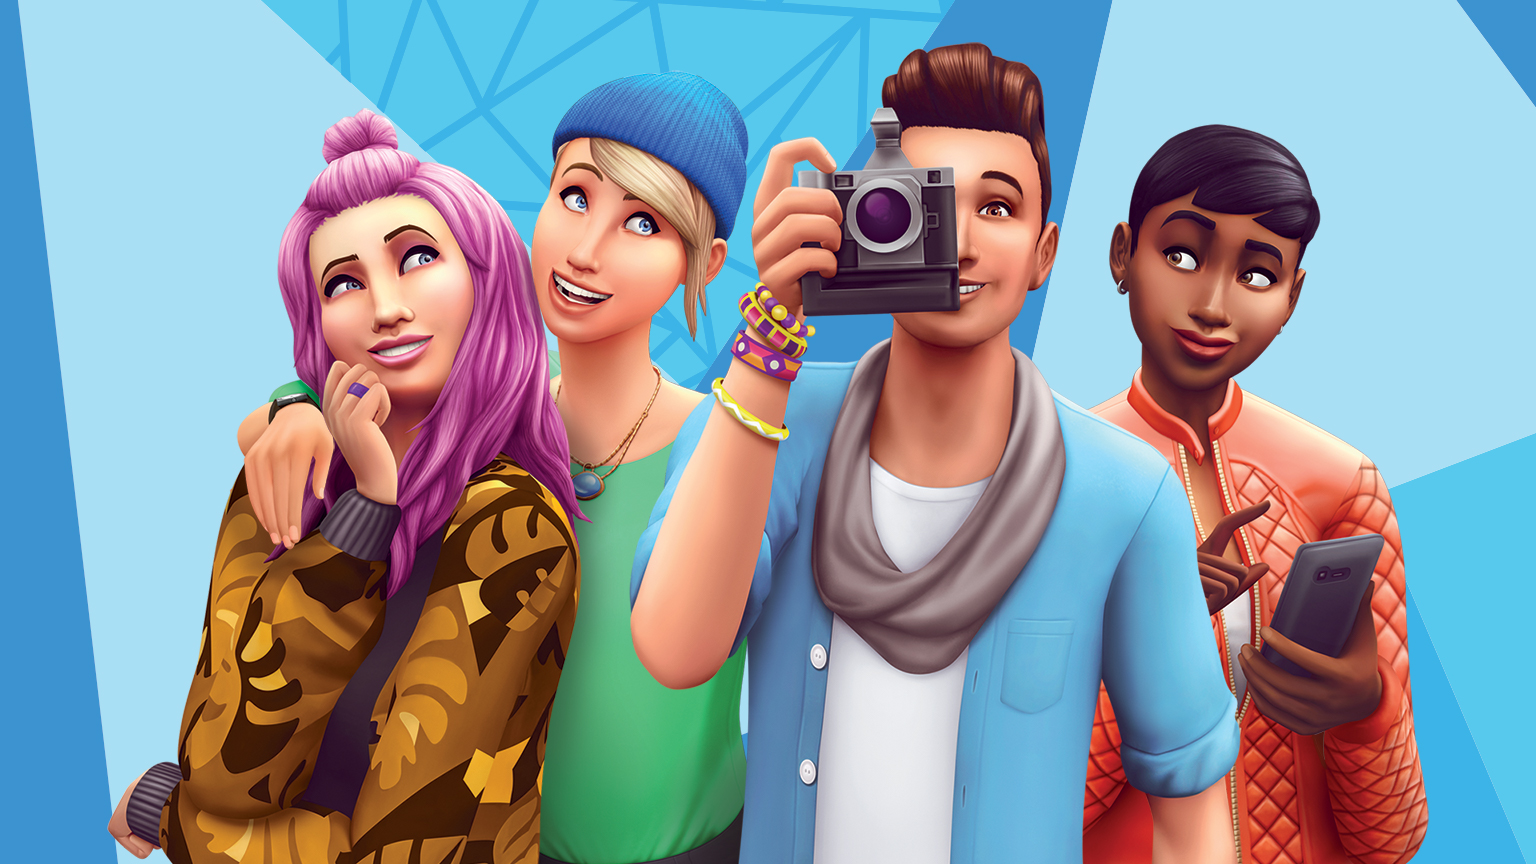 Podrás jugar gratis a Los Sims 4 a partir de octubre